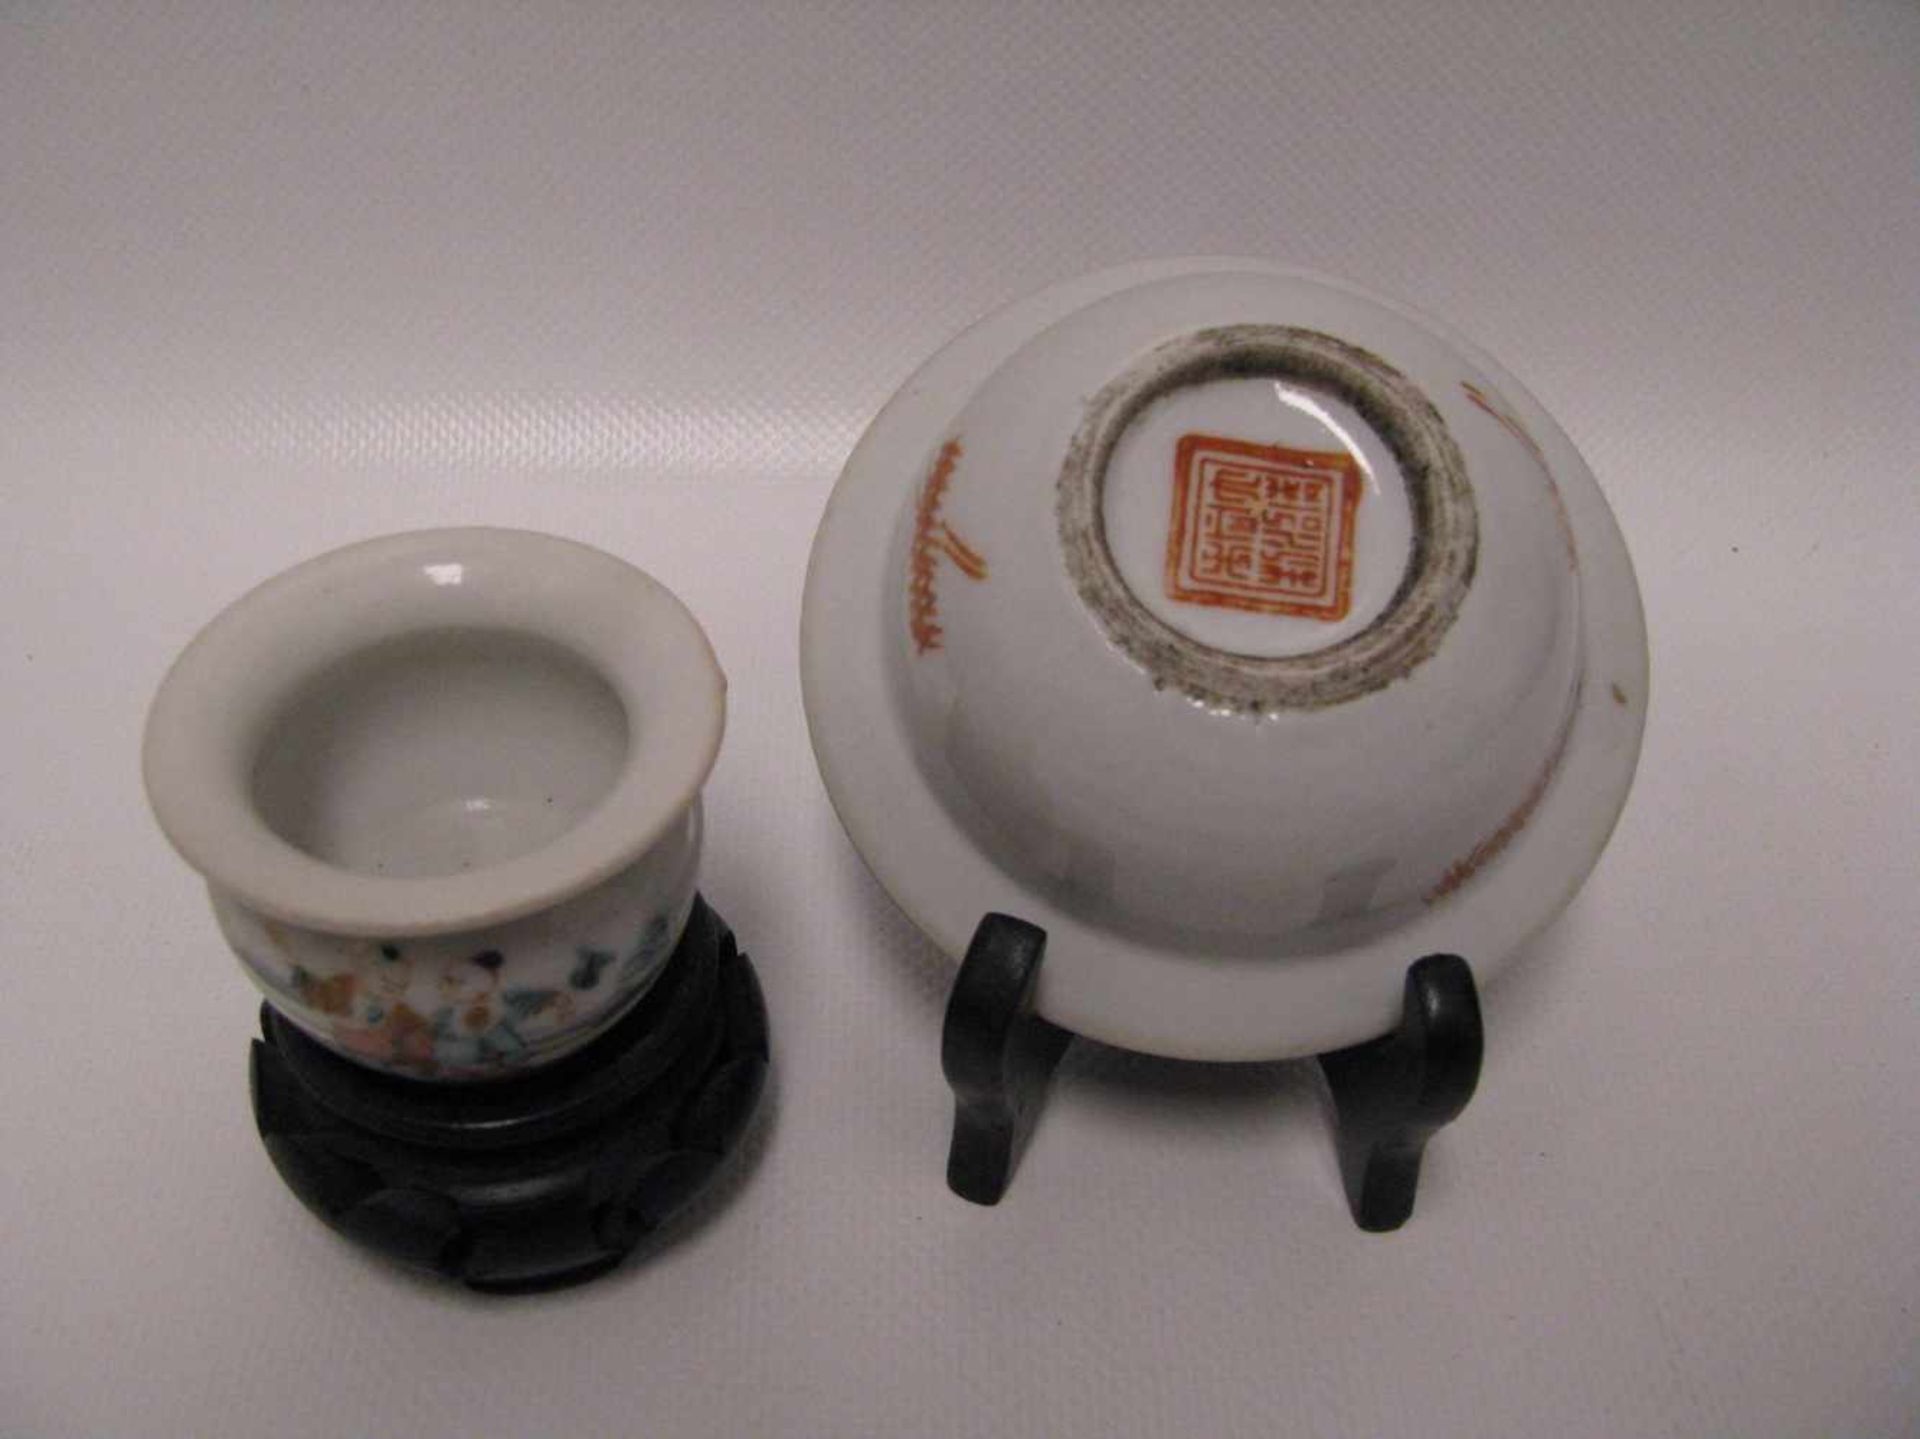 Wasserschale und Futternapf für Vögel, China, Porzellan mit polychromer Bemalung, Schale h 3,5 cm, - Image 2 of 2